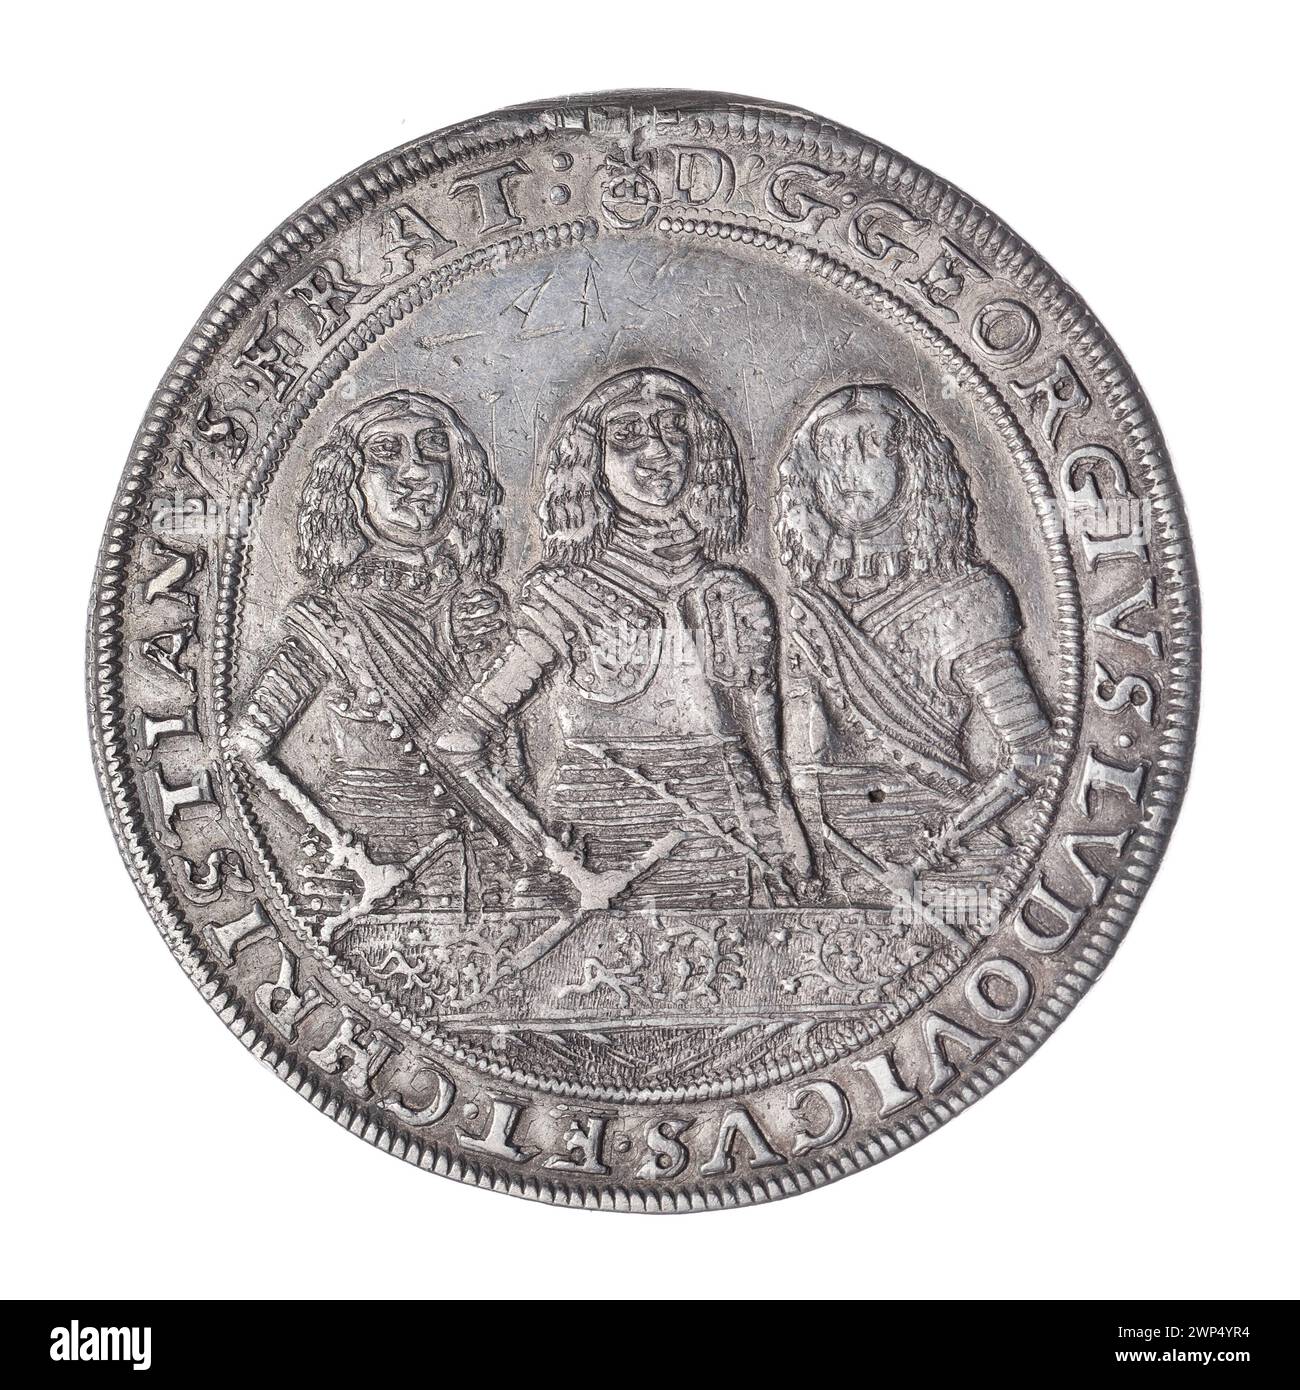 thaler; Jerzy III (ksi Brzesko-Legnicka-Wośowski; 1611-1664), Ludwik IV (KSI Brzesko-Rednicko-Wośców; 1616-1663), Christian (ksi Brzesko-Legnicko-Wośowski; 1618-1672), Pfahler, Christian (fl. 1651-1665), Weiss, Elias (FL. 1657-1673); 1657 (1657-00-00-1657-00); Christian (Fürst von Brest-Legnicka-Wołowski-1618-1672), Christian (Fürst von Brest-Legnicki-Wołowski-1618-1672)-Ikonographie, Jerzy III (Fürst von Brest-Legnicka- 1663-1611 1616-1664), Jerzy III (Fürst und Legnica-1611-1664) - Ikonographie, Ludwik IV (Fürst Legnicki-1616-1663) Stockfoto